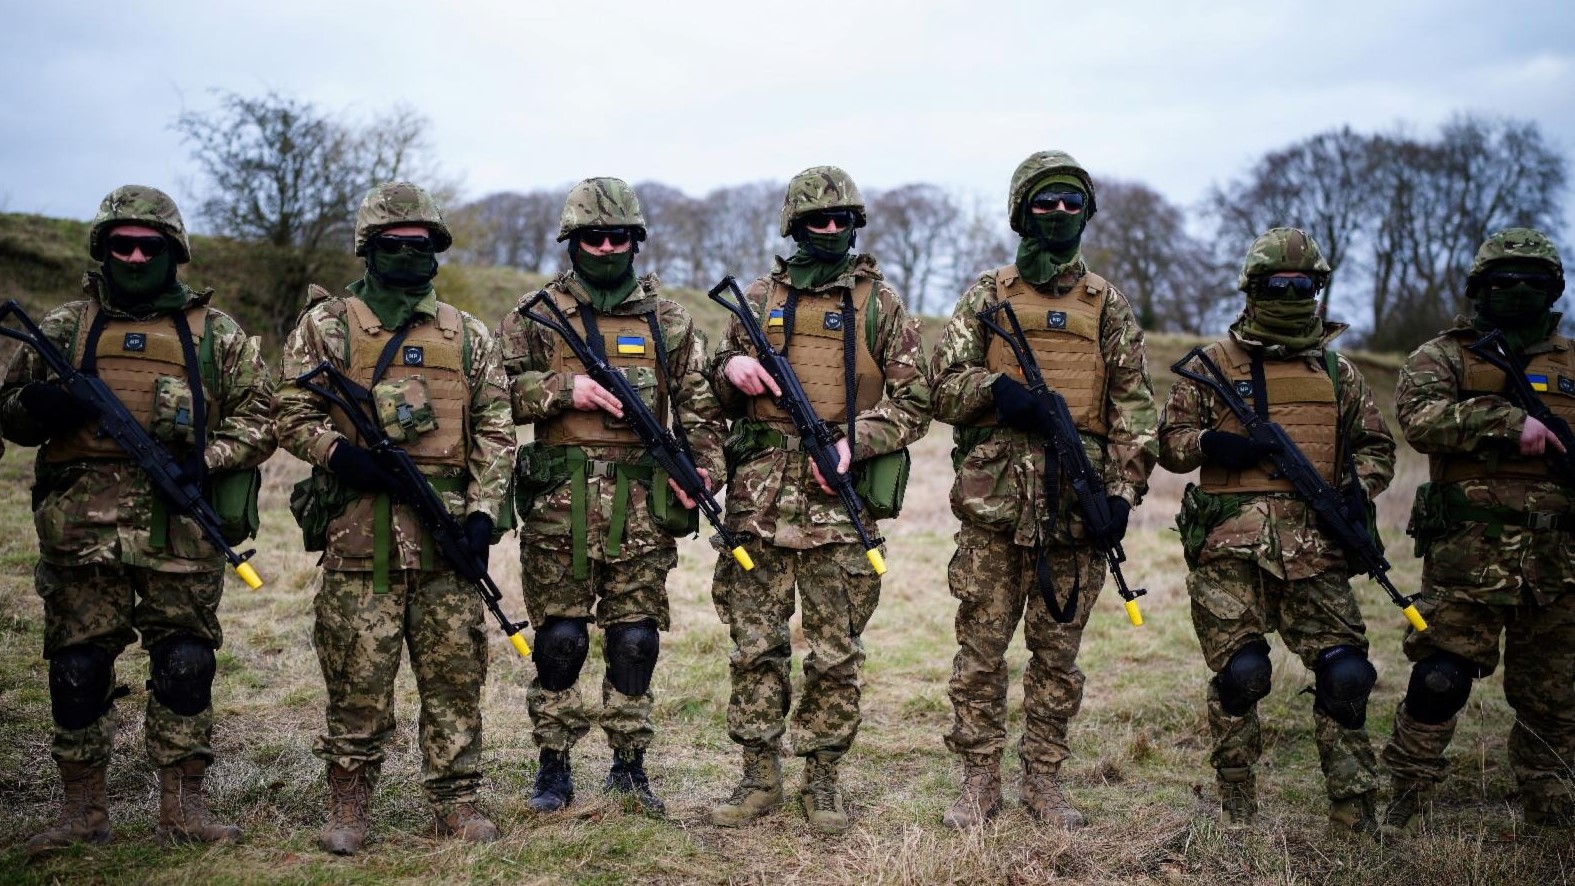 جنود أوكرانيون يشاركون في دورة تدريبية في ويلتشير، إنجلترا، حيث تدعم القوات المسلحة الأسترالية التدريب الذي تقوده المملكة المتحدة للمجندين الأوكرانيين، في 1 فبراير 2023